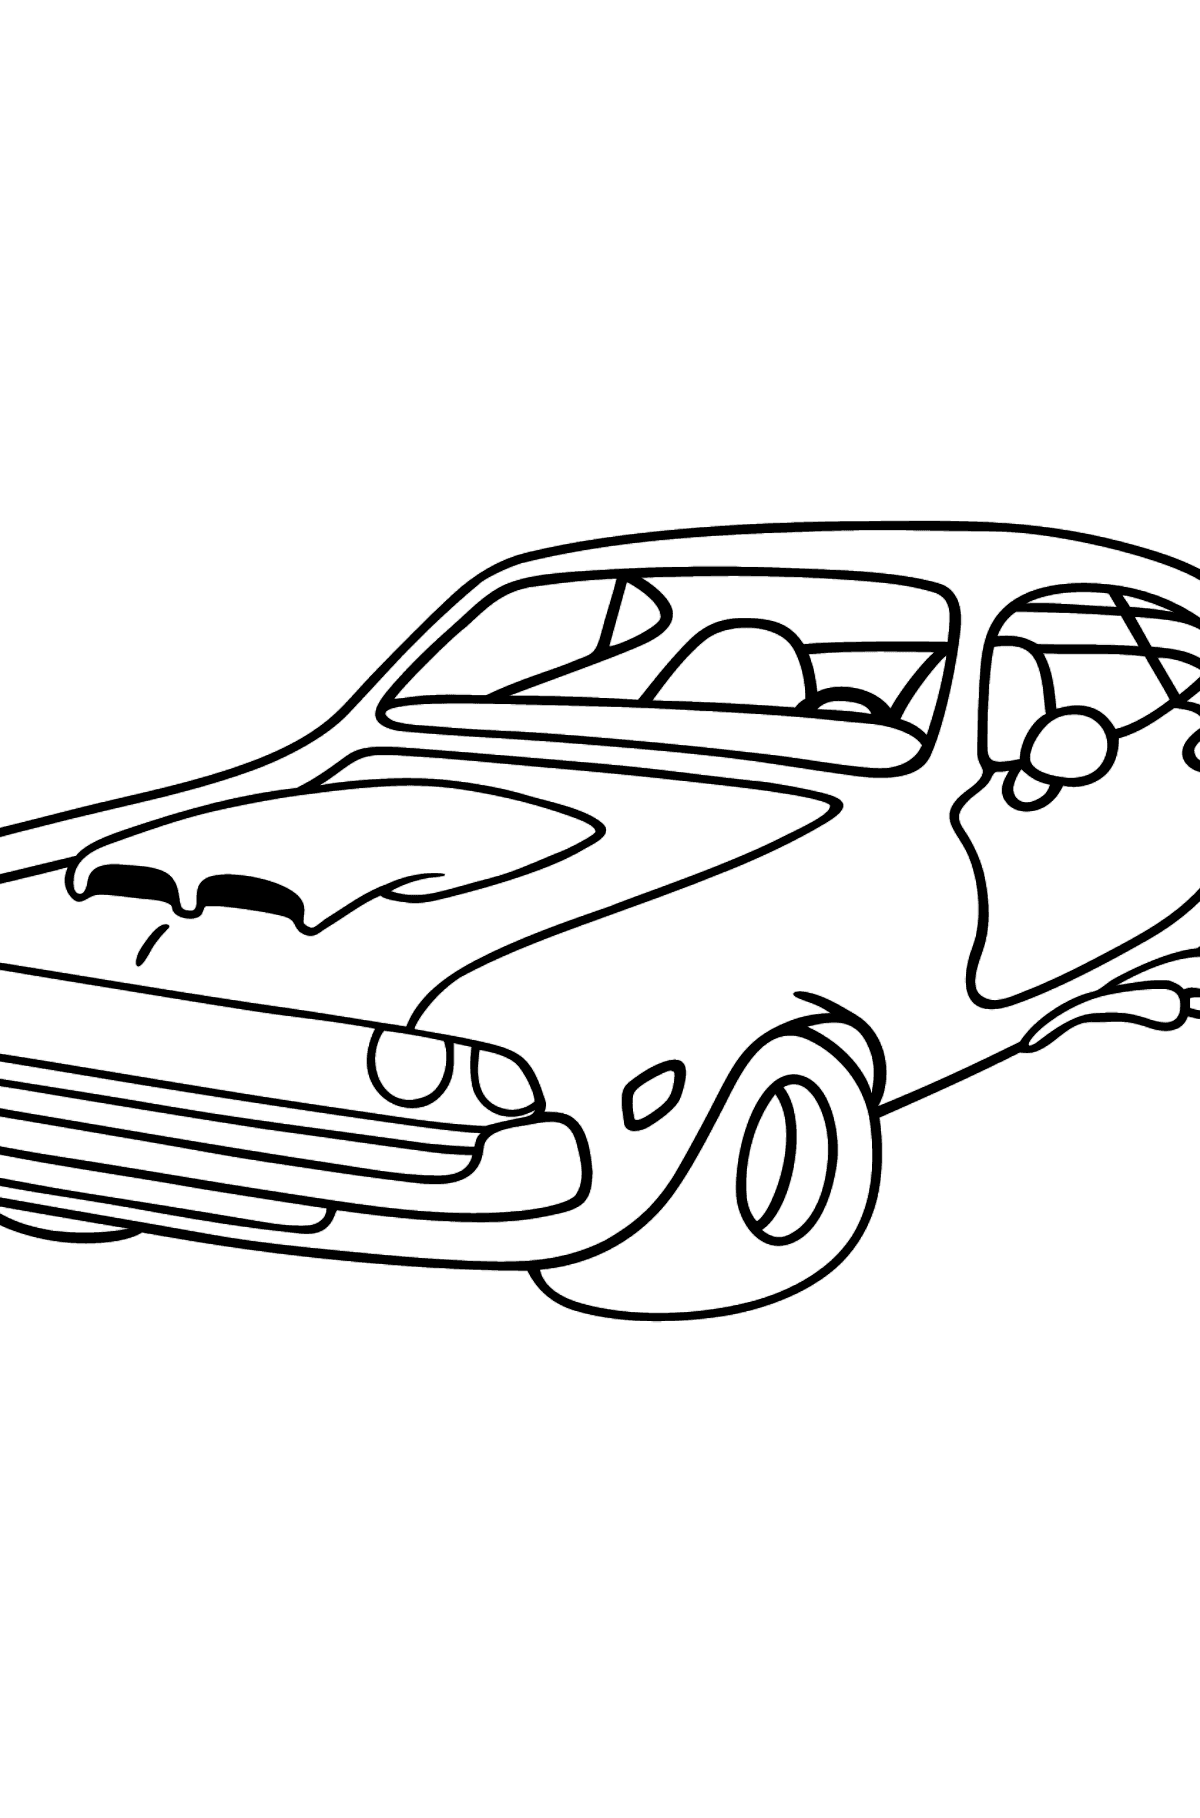 Desenho para colorir de um Carro esporte Chevrolet - Imagens para Colorir para Crianças